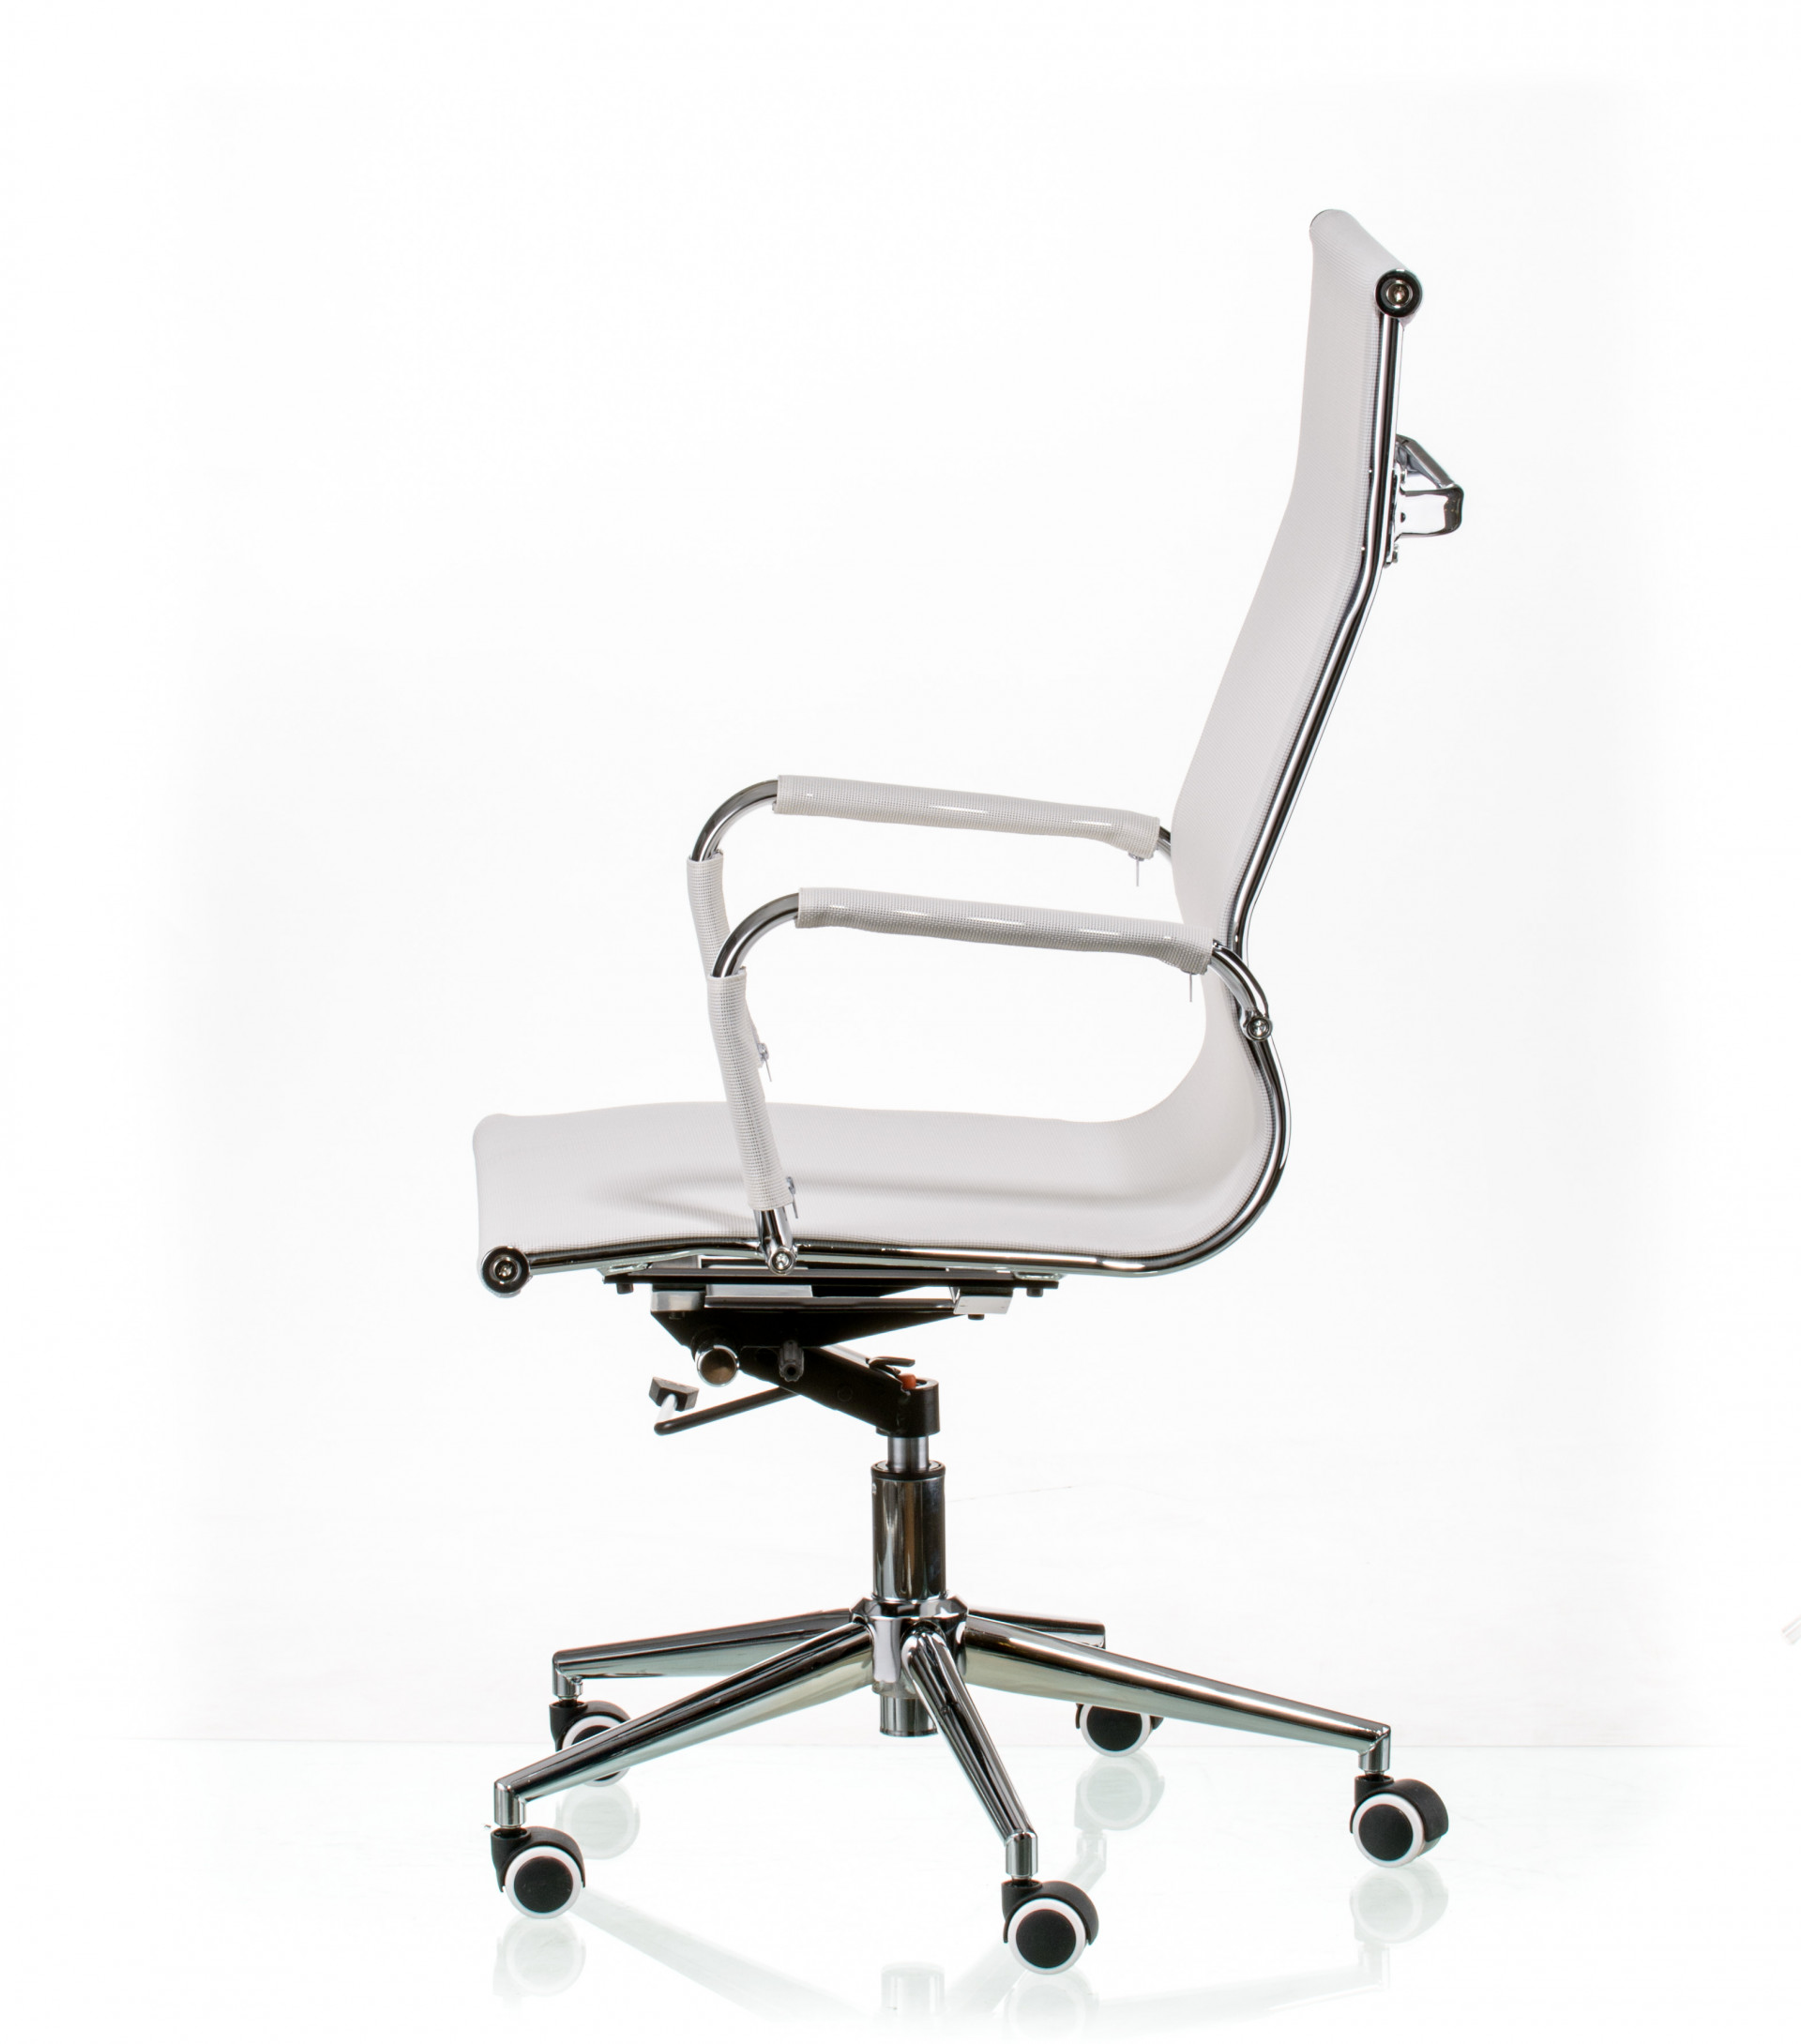 Кресло офисное TPRO- Solano mesh white E5265